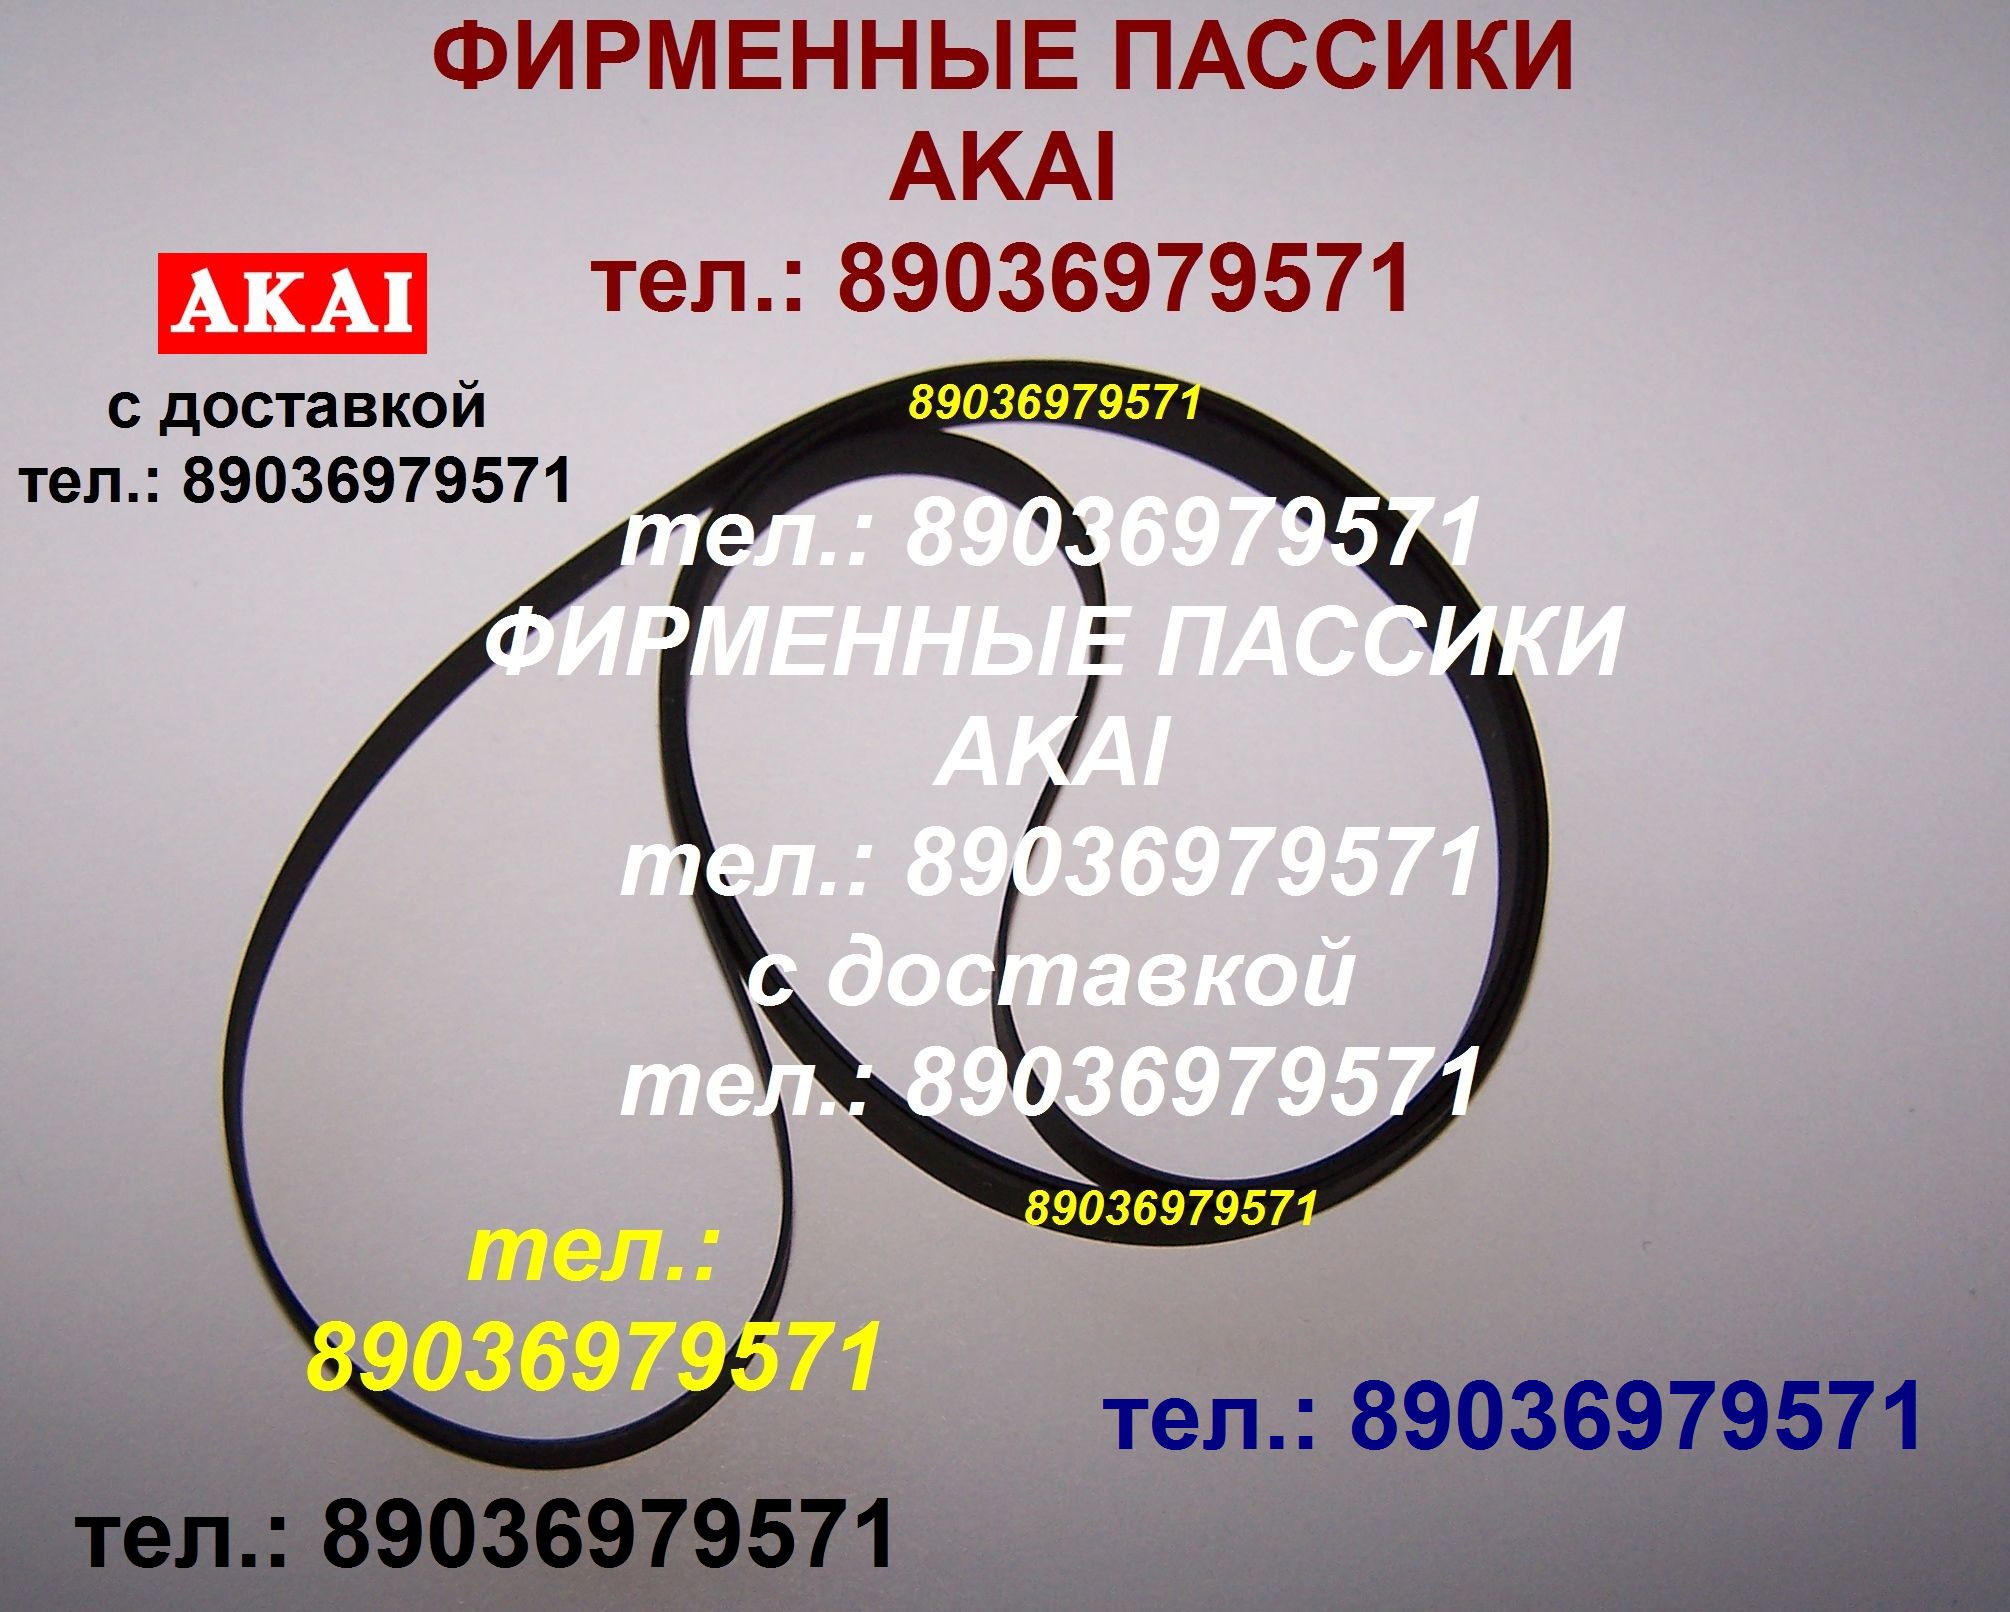 Фирменный пассик для Akai AP-B101 ремень пасик на Akai APB101 Акаи AP B 101 пассик для проигрывателя в городе Москва, фото 1, телефон продавца: +7 (903) 697-95-71